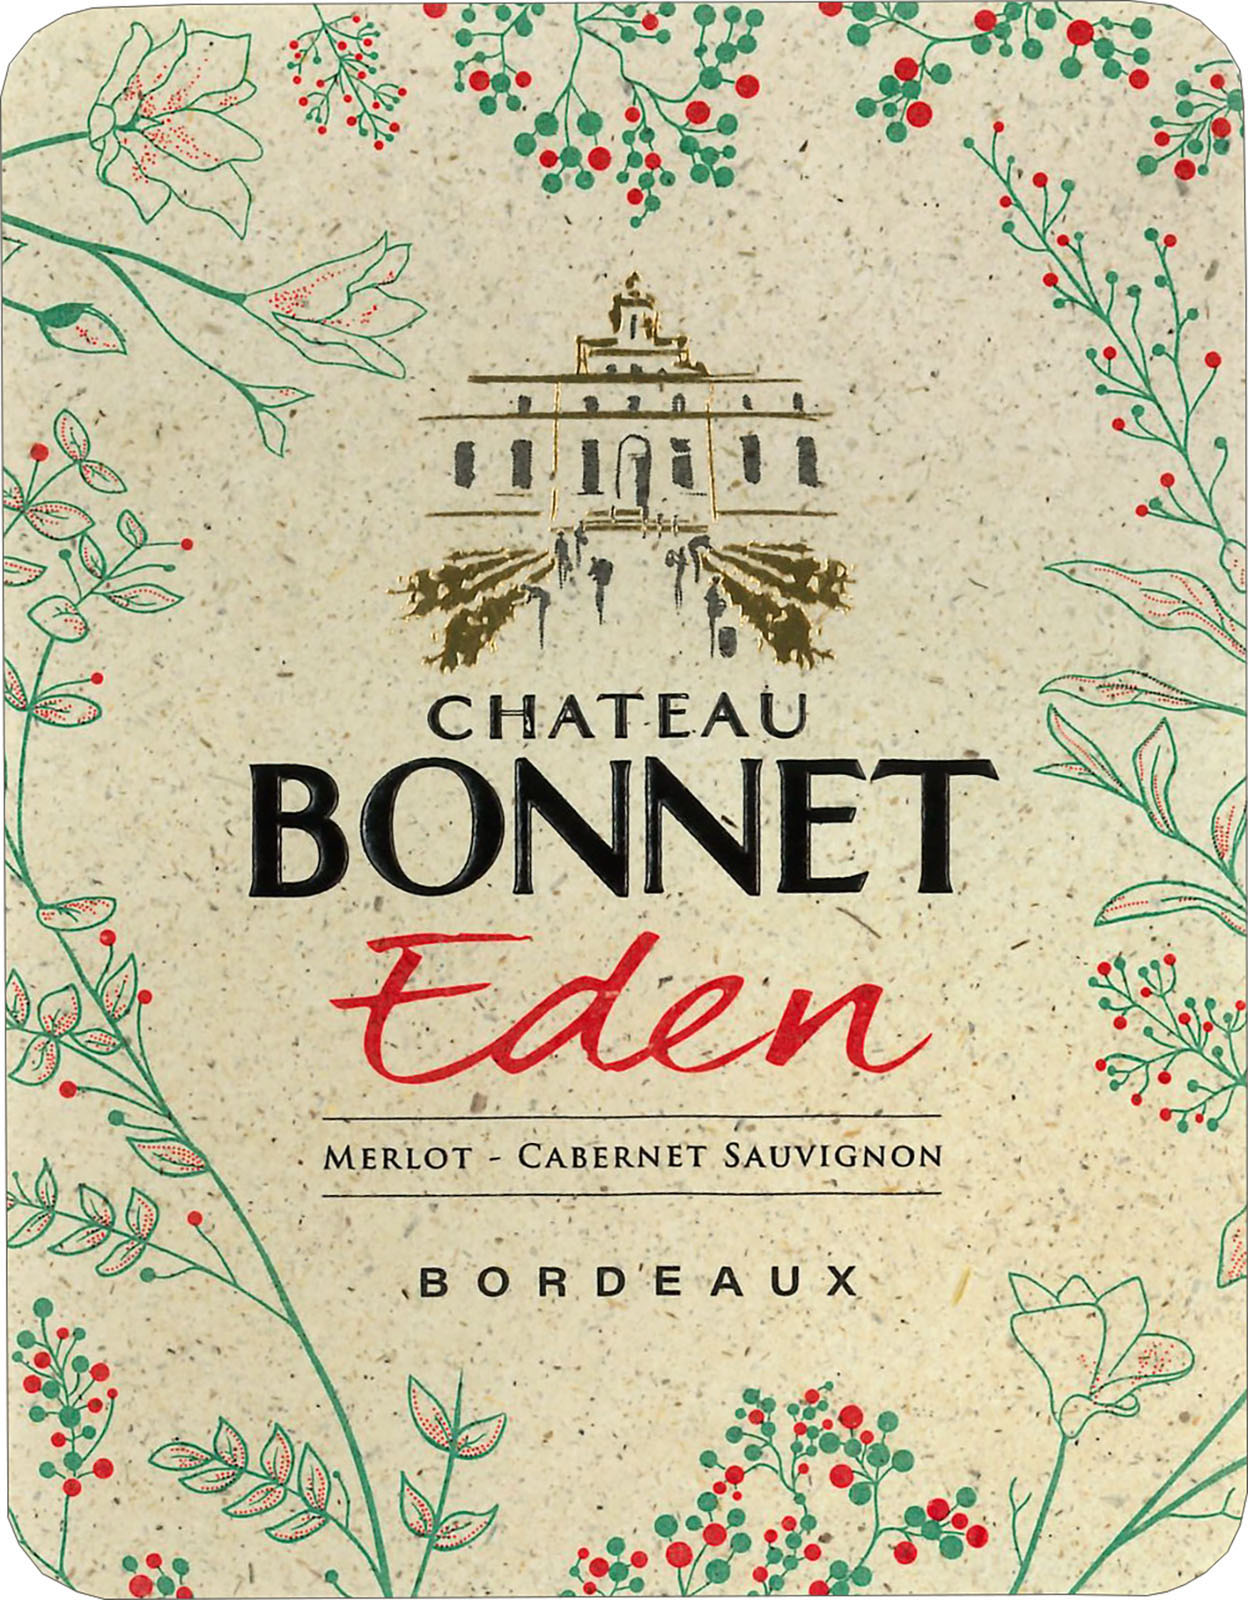 Chateau Bonnet - Eden Rouge label